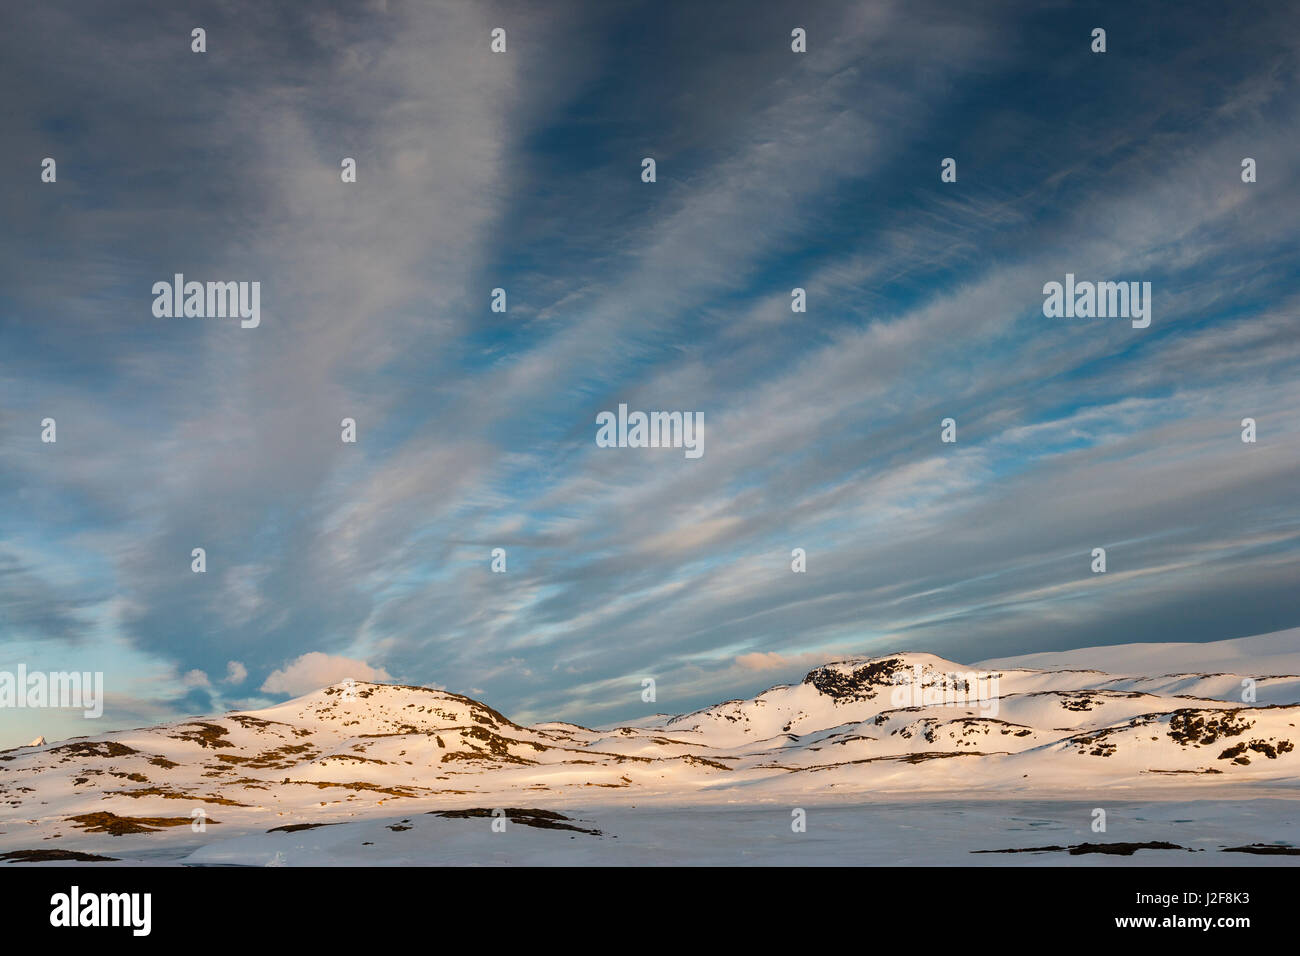 Las montañas de Jotunheimen en luz del atardecer bajo un cielo con nubes cirrus Foto de stock